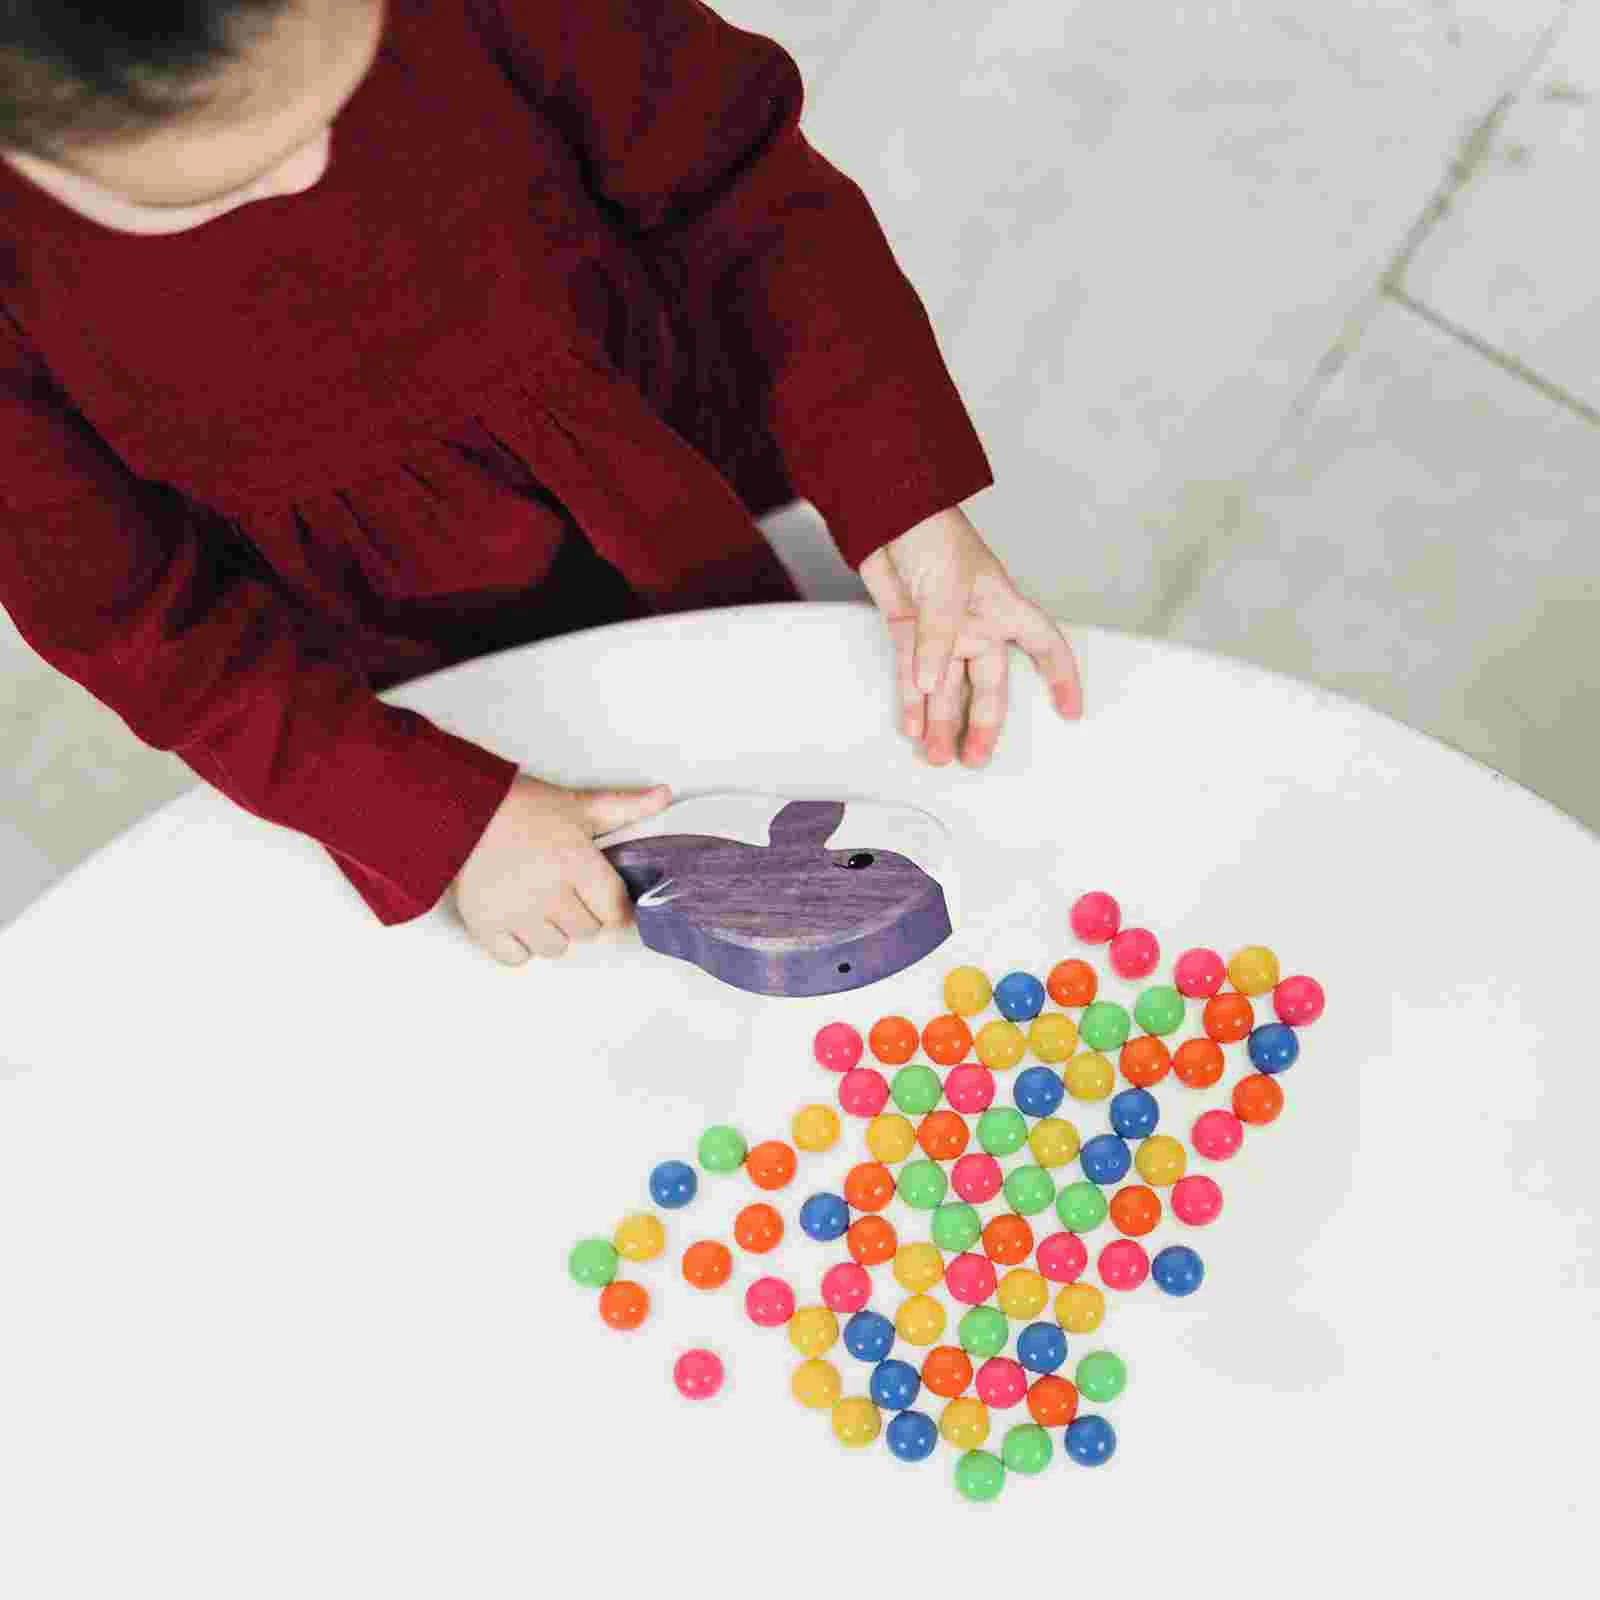 

Цветные пластиковые шарики с подсчетом для обучения, 100 шт. (5 цветов)